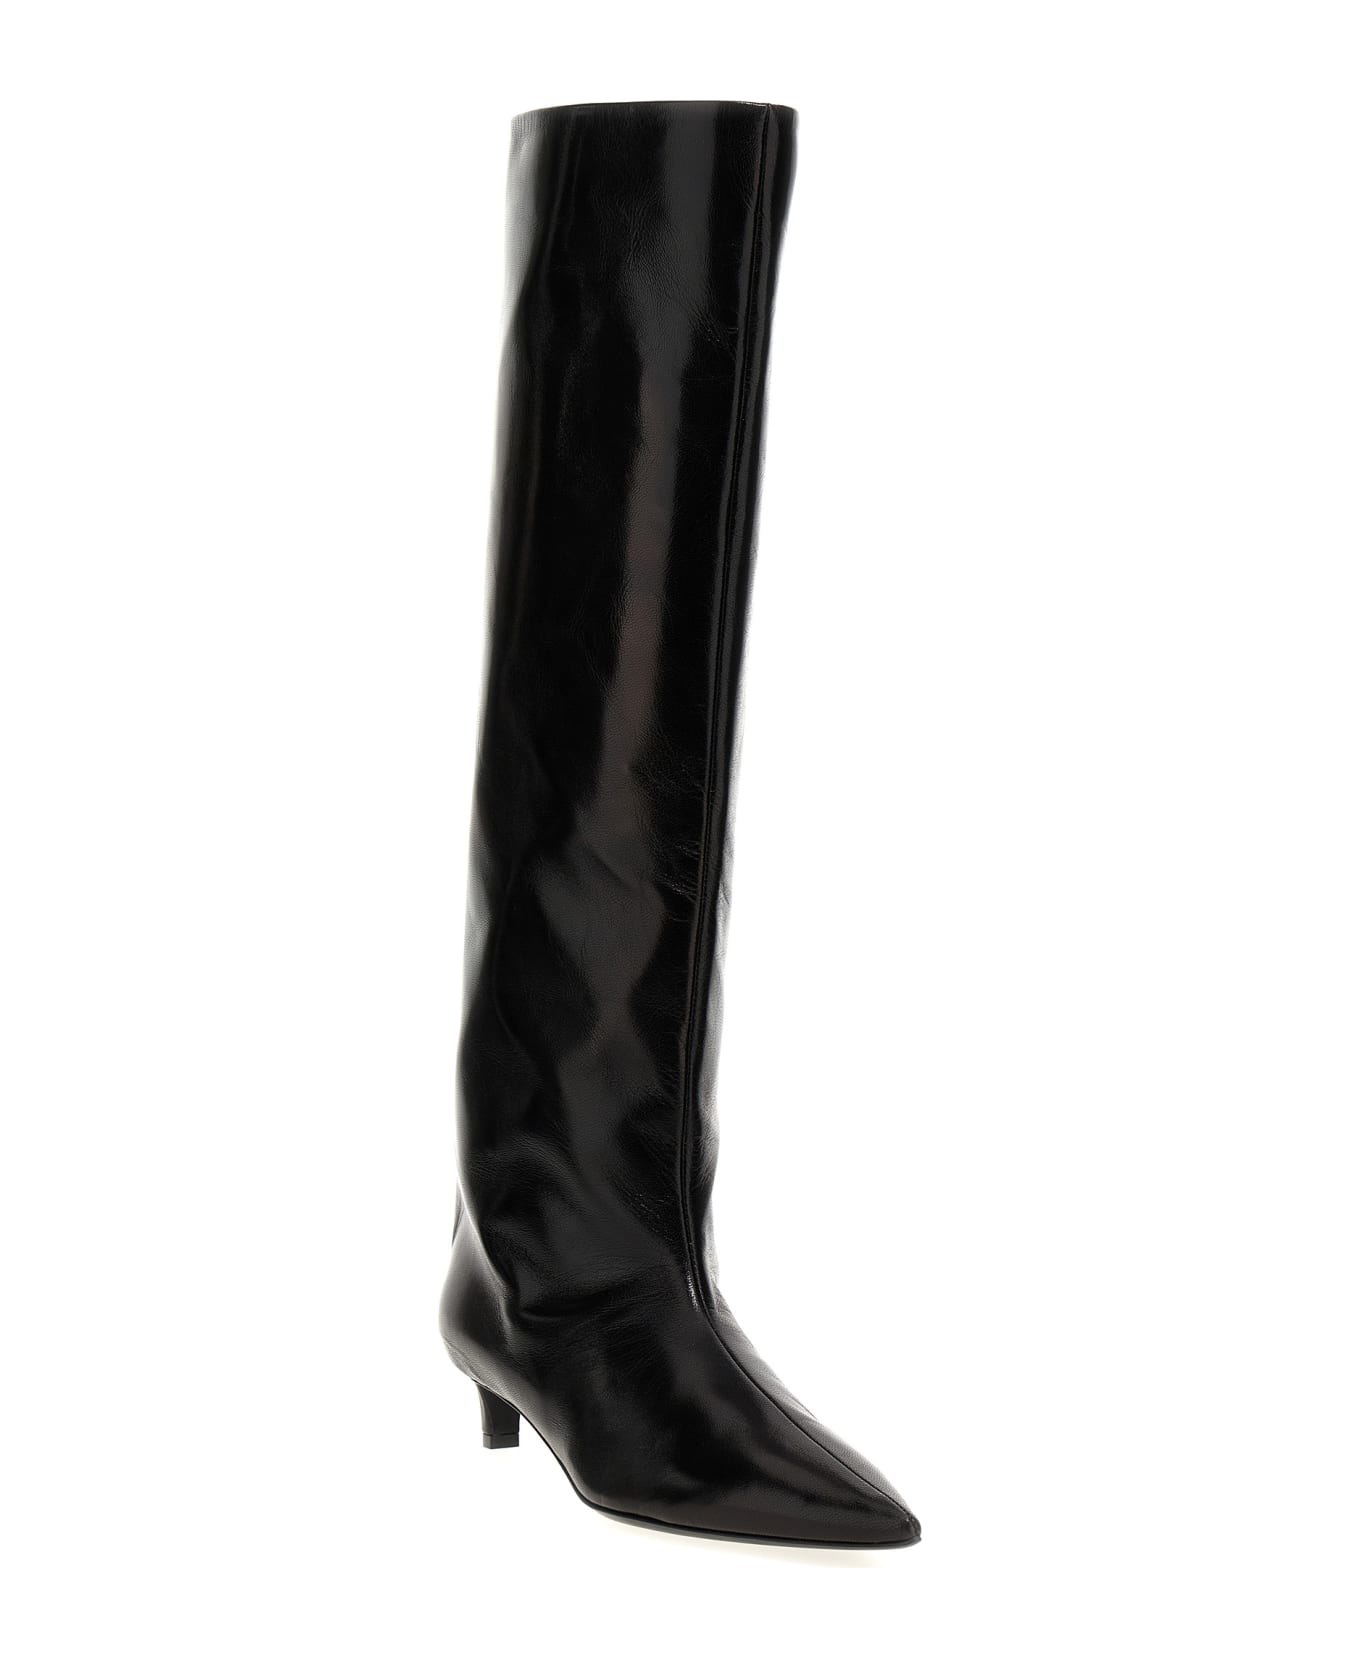 Jil Sander Black Leather Boots - Black